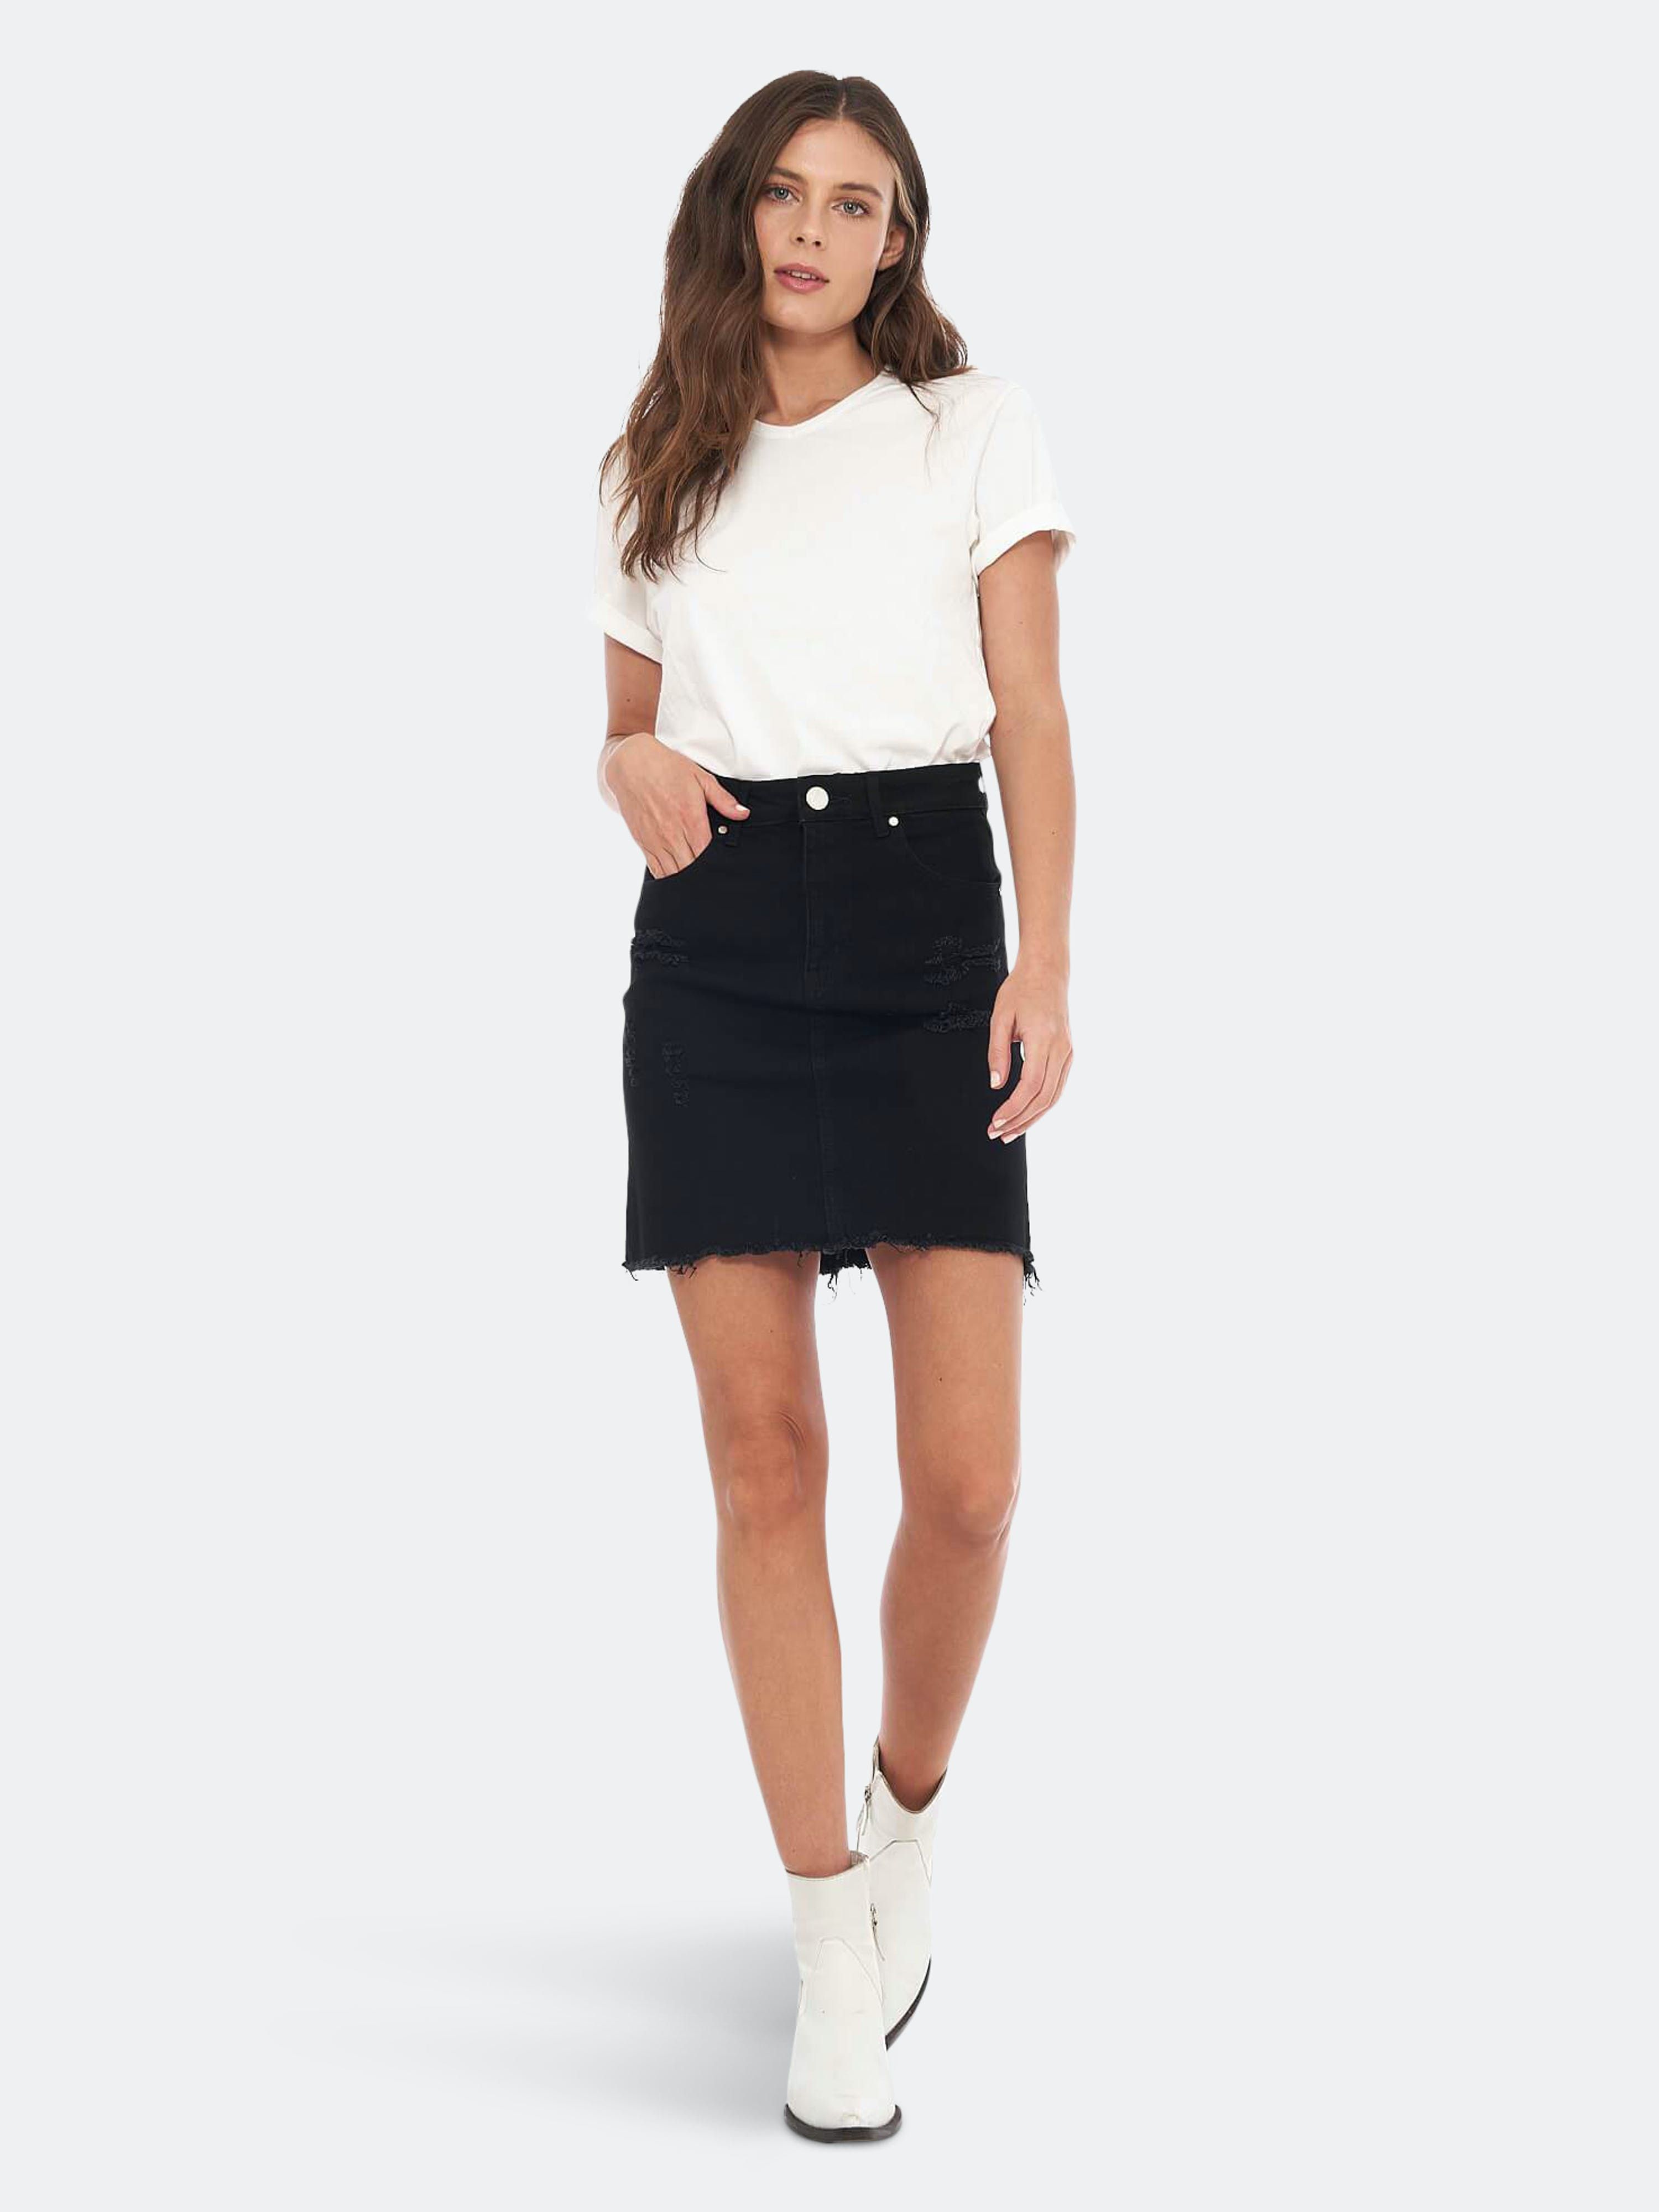 Kendall Raw Edge Black Skirt - XS - Also in: L, S, M, XL | Verishop